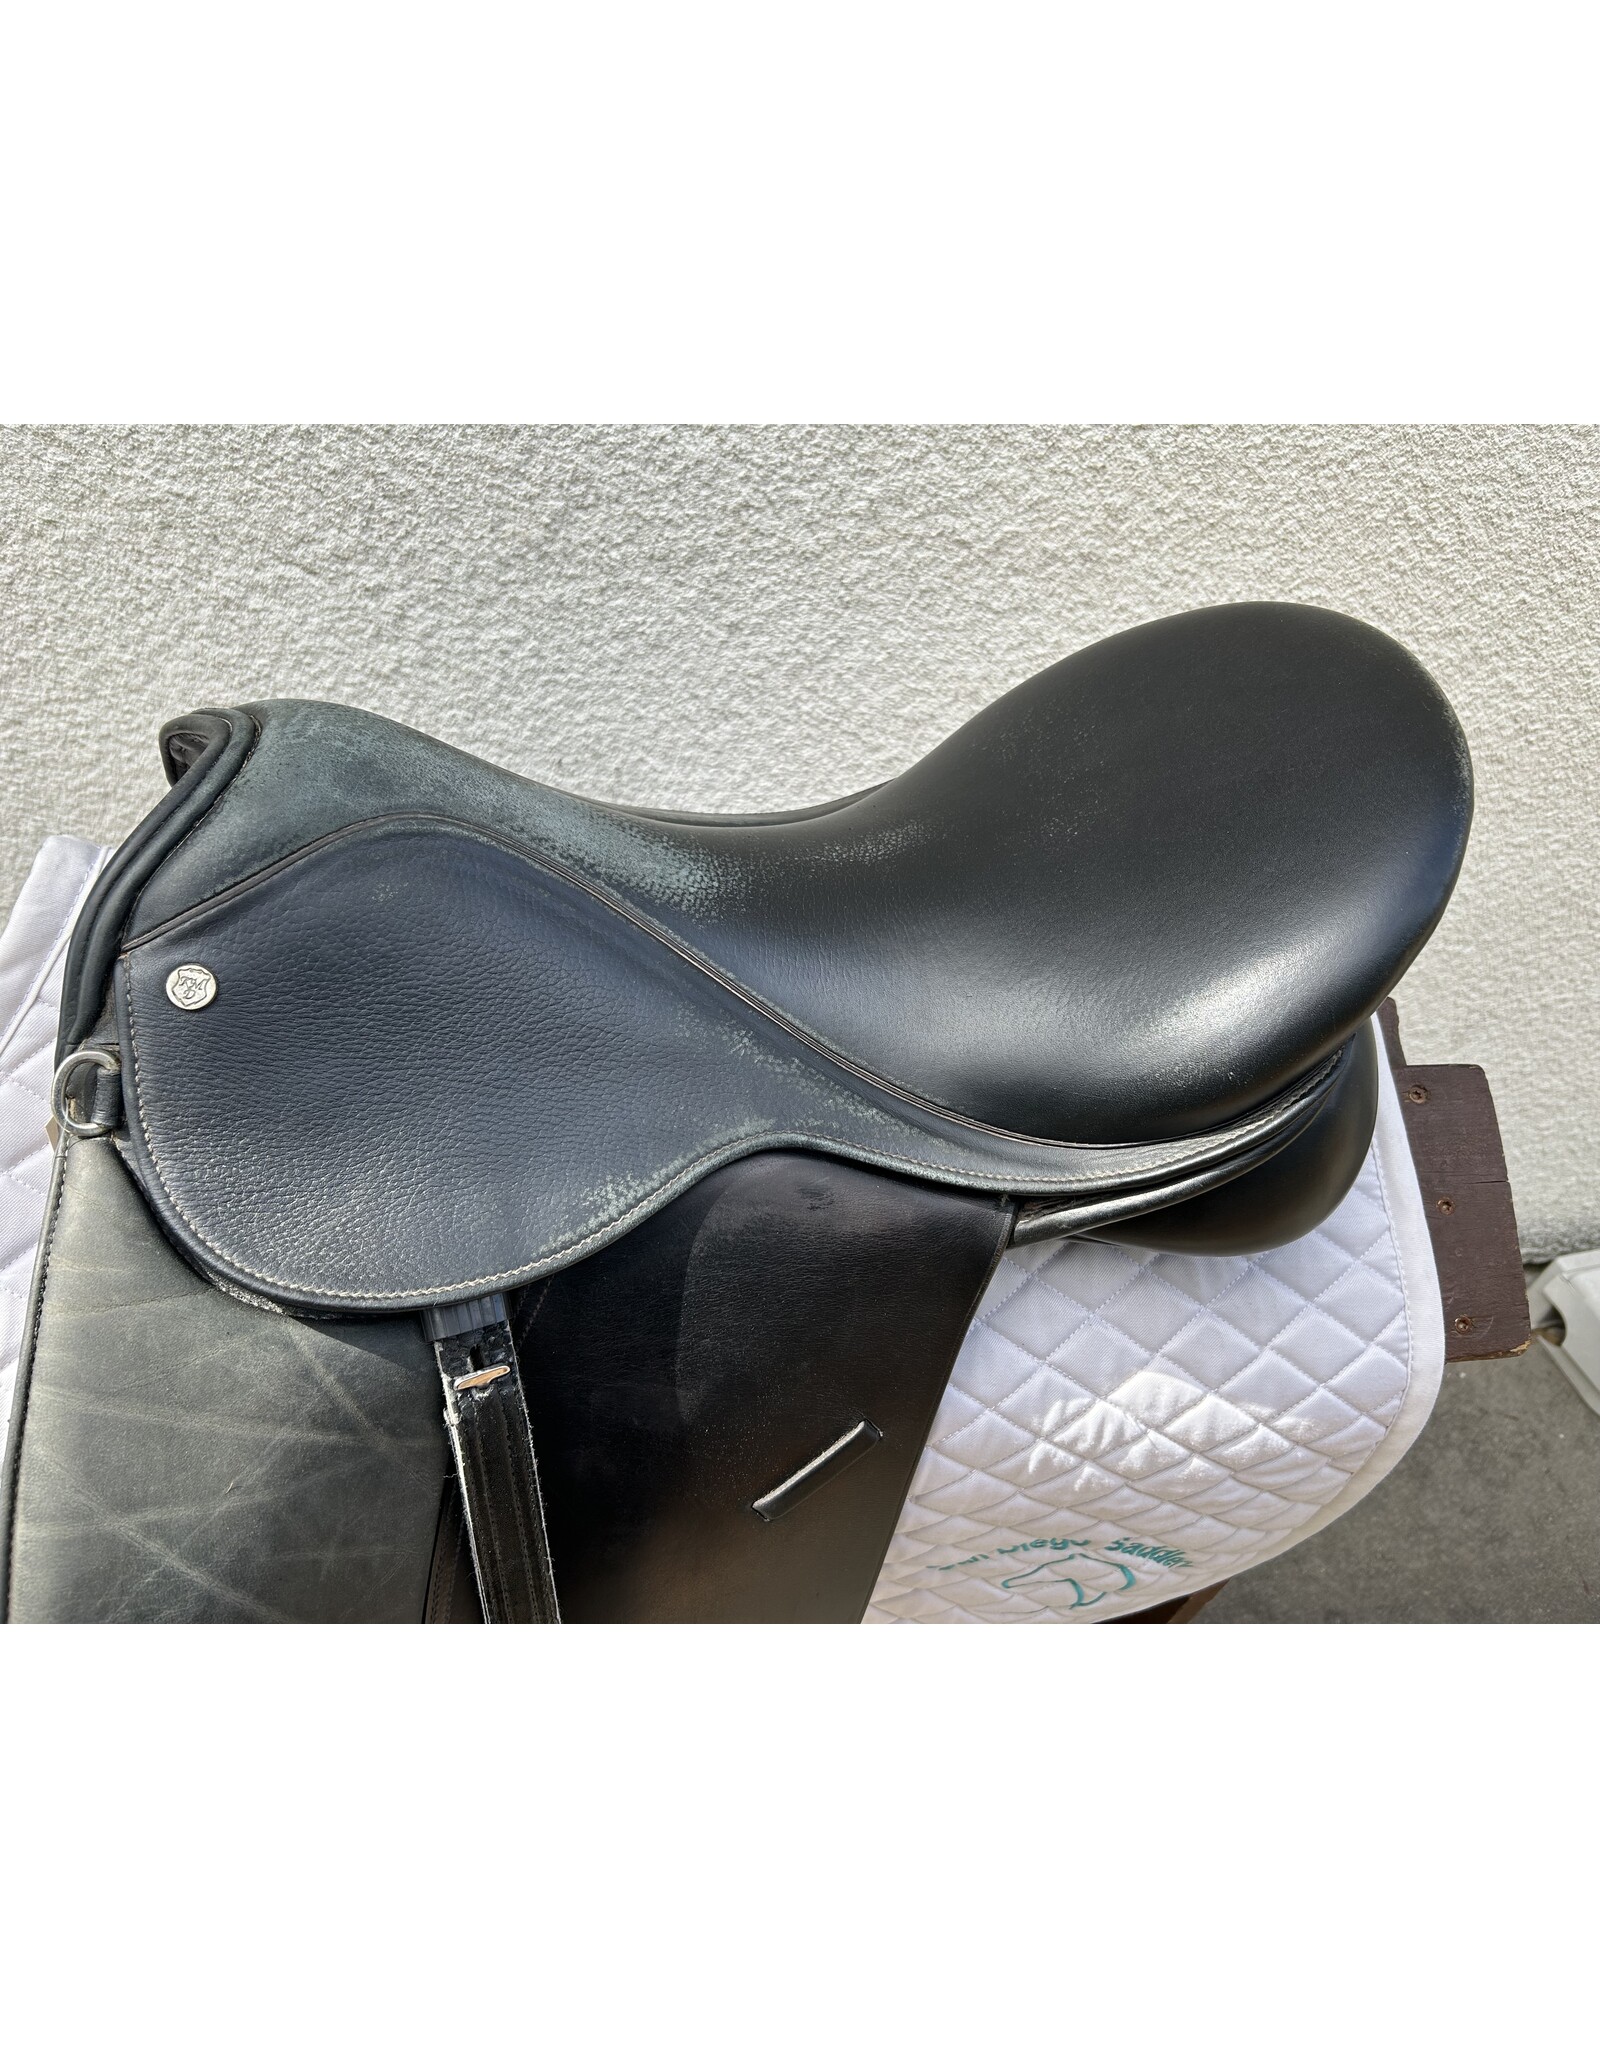 Klimke Dressage Saddle 18.5" Seat 4.5" Gullet